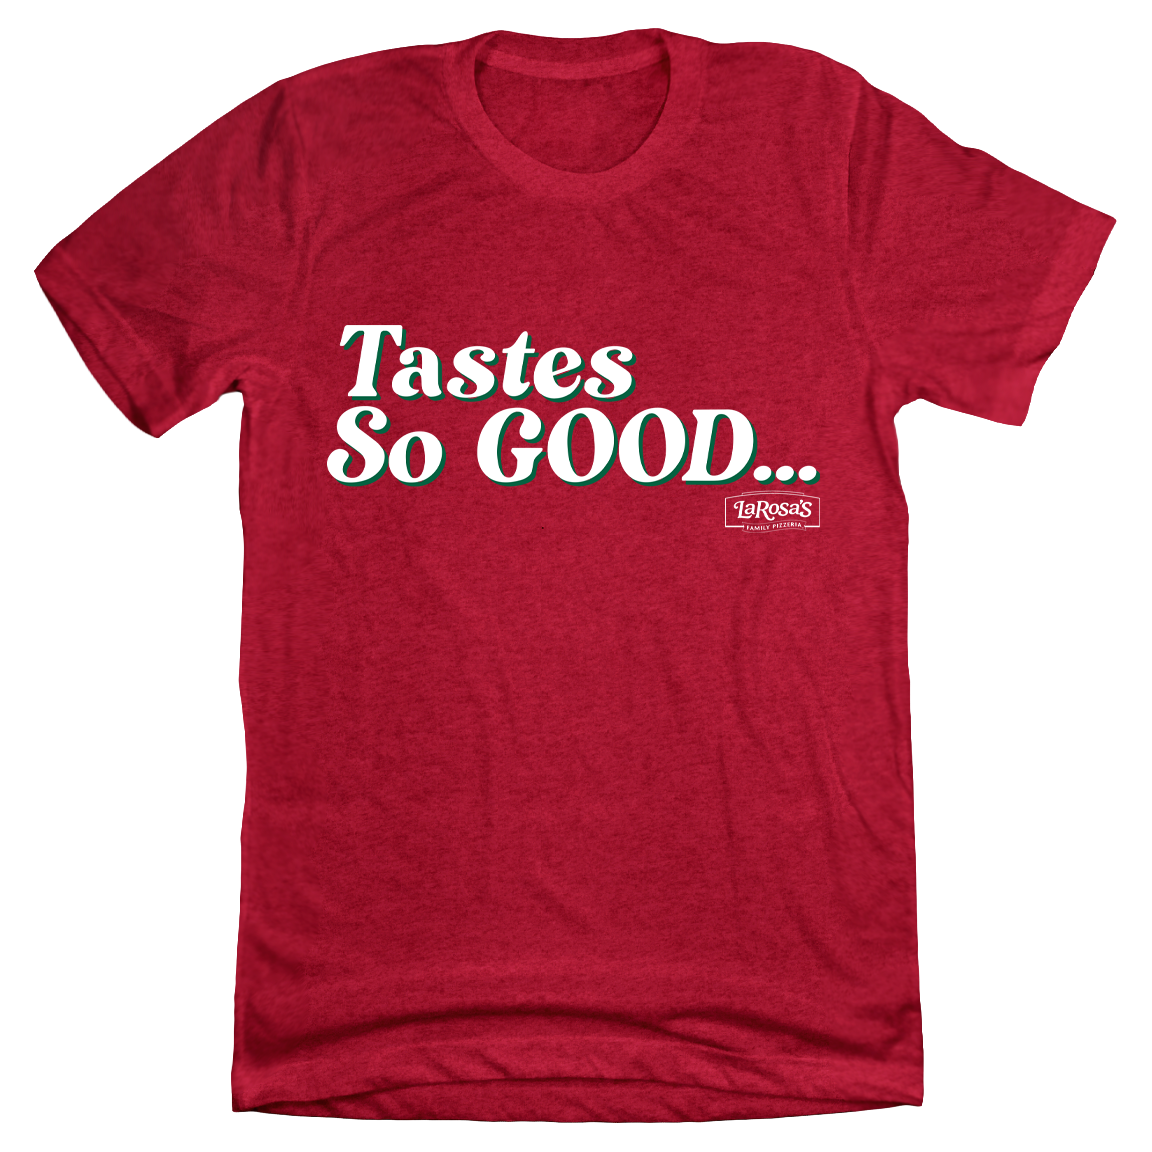 LaRosa's Tastes So Good T-shirt